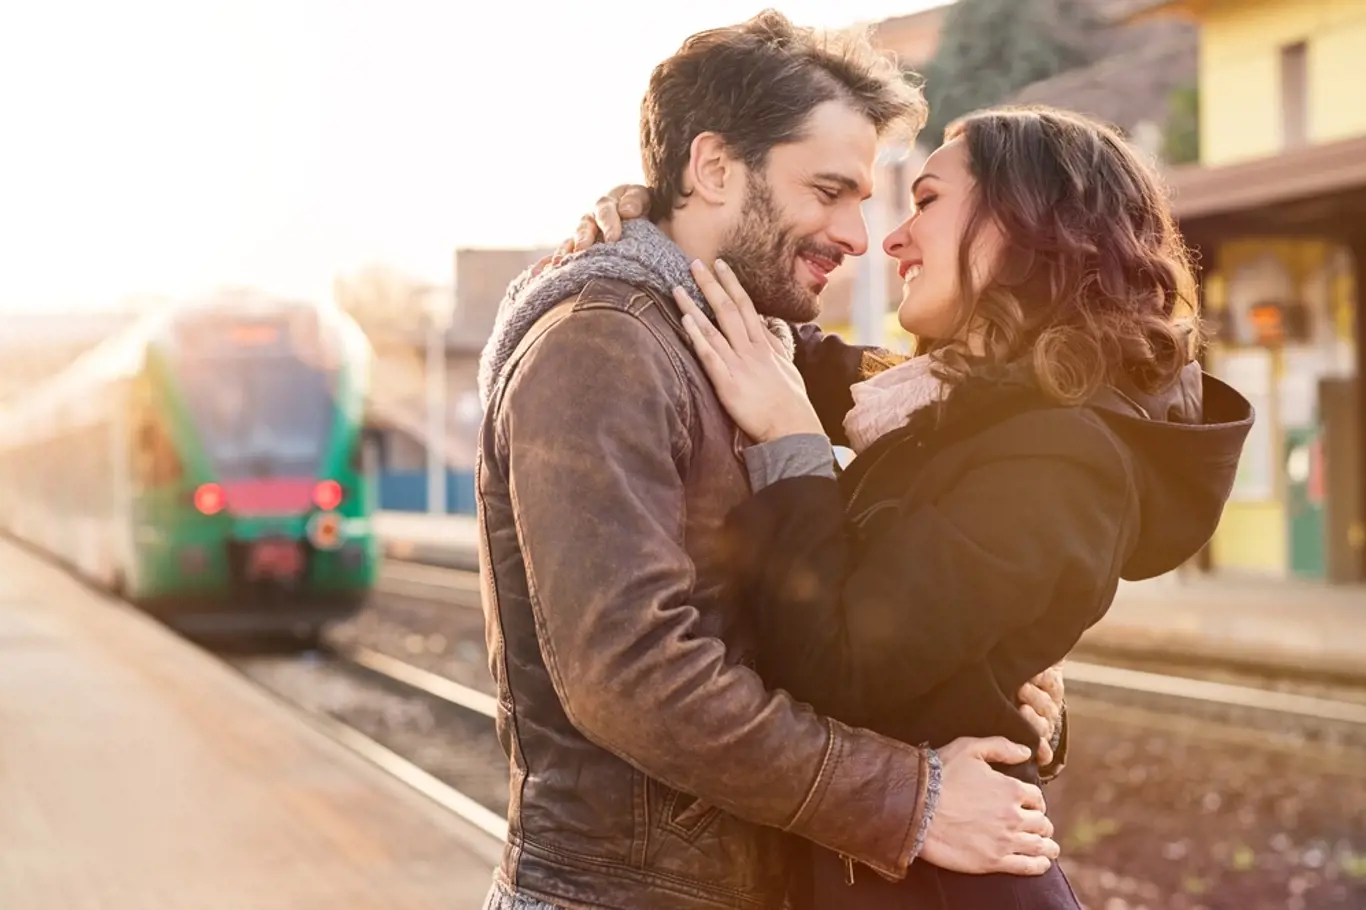 Novou lásku můžete potkat klidně ve vlakovém kupé